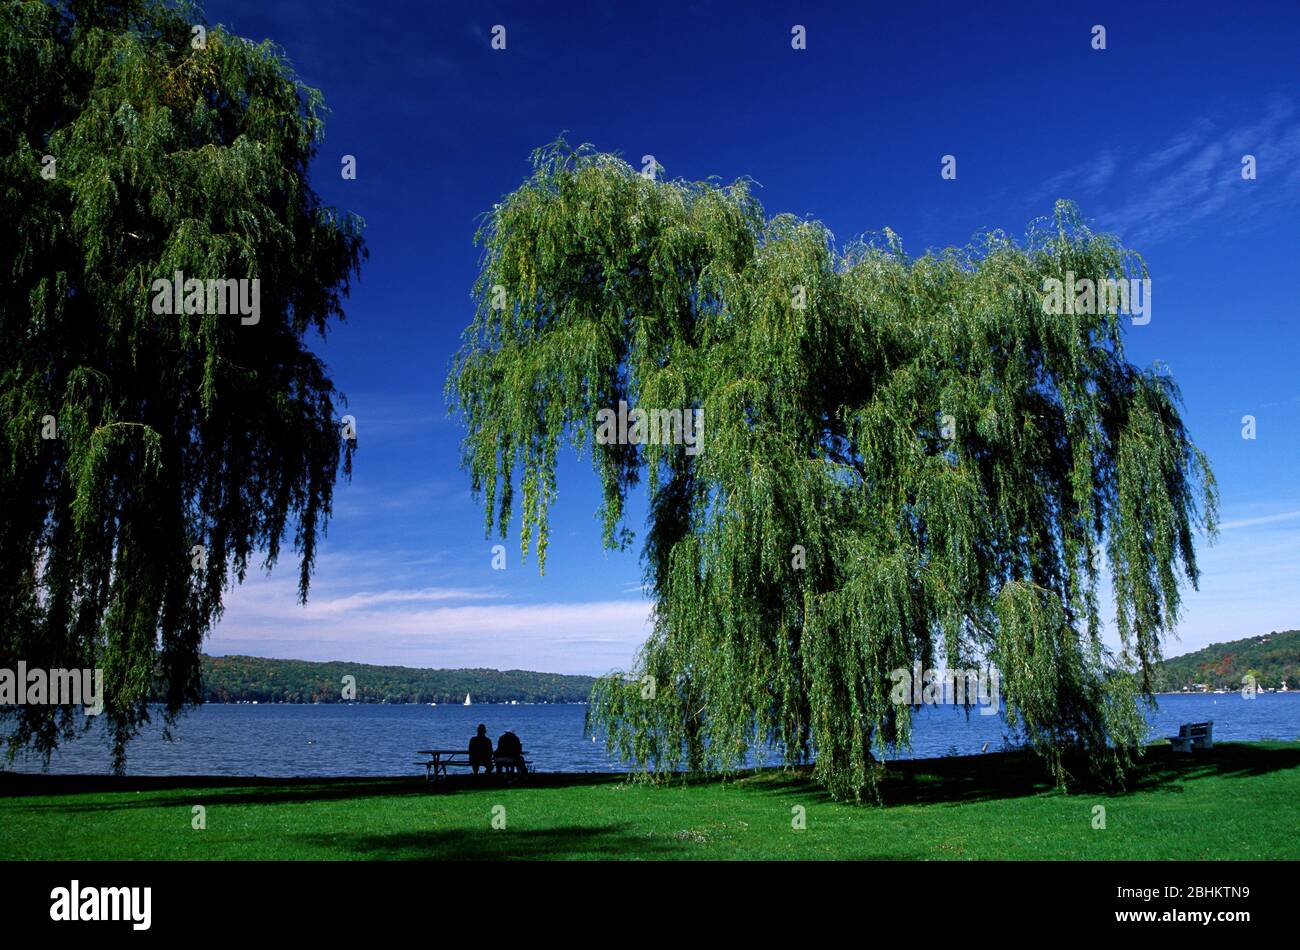 Saules sur le lac Cayuga, le parc Stewart, Ithaca, New York Banque D'Images